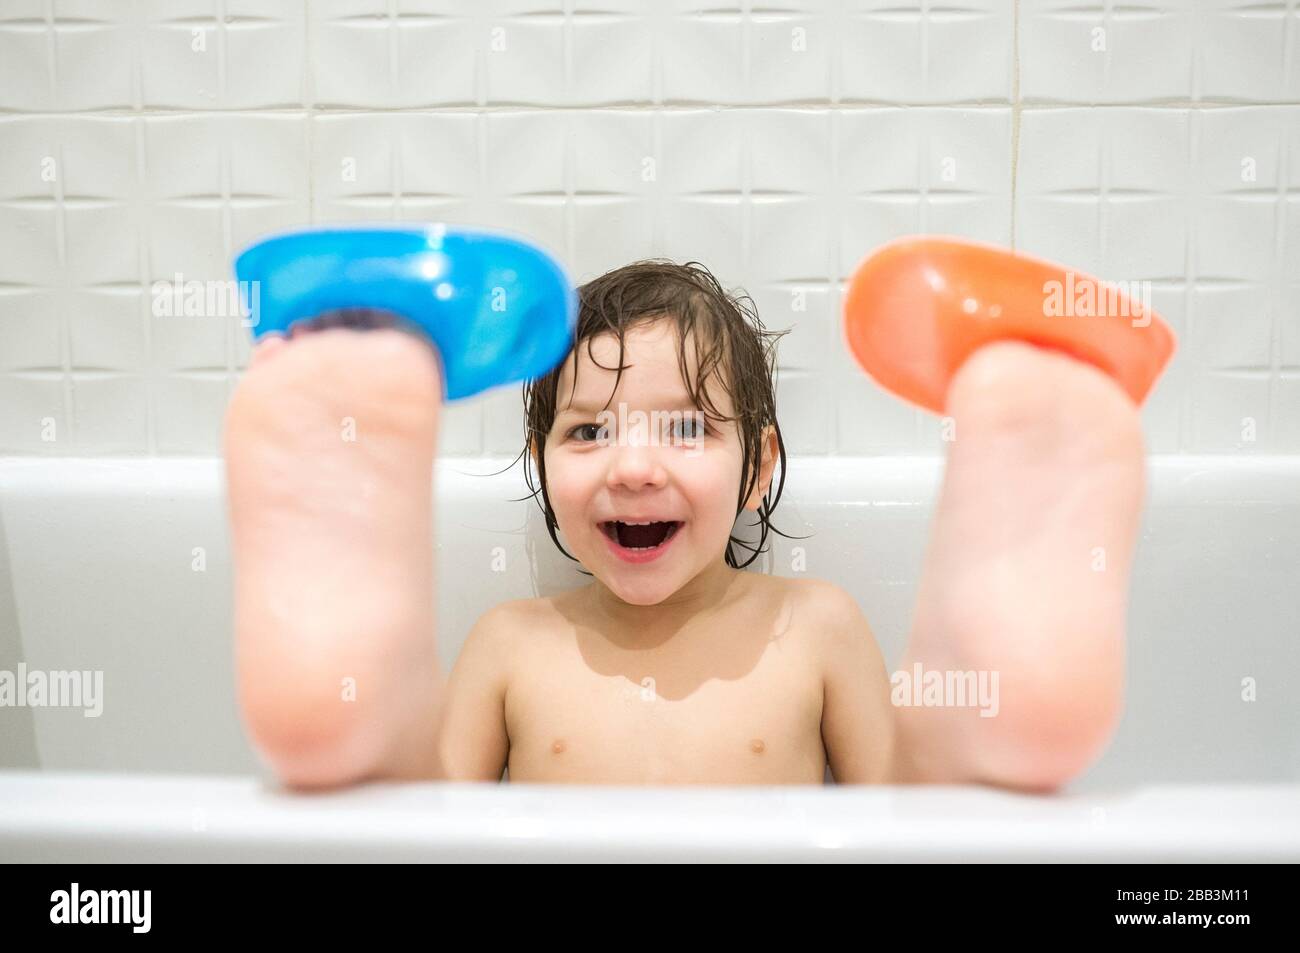 ragazzo di 4 anni che indossa le barche sulle dita dei piedi. I bambini si divertono nella vasca da bagno. Rumore dolce. Foto Stock